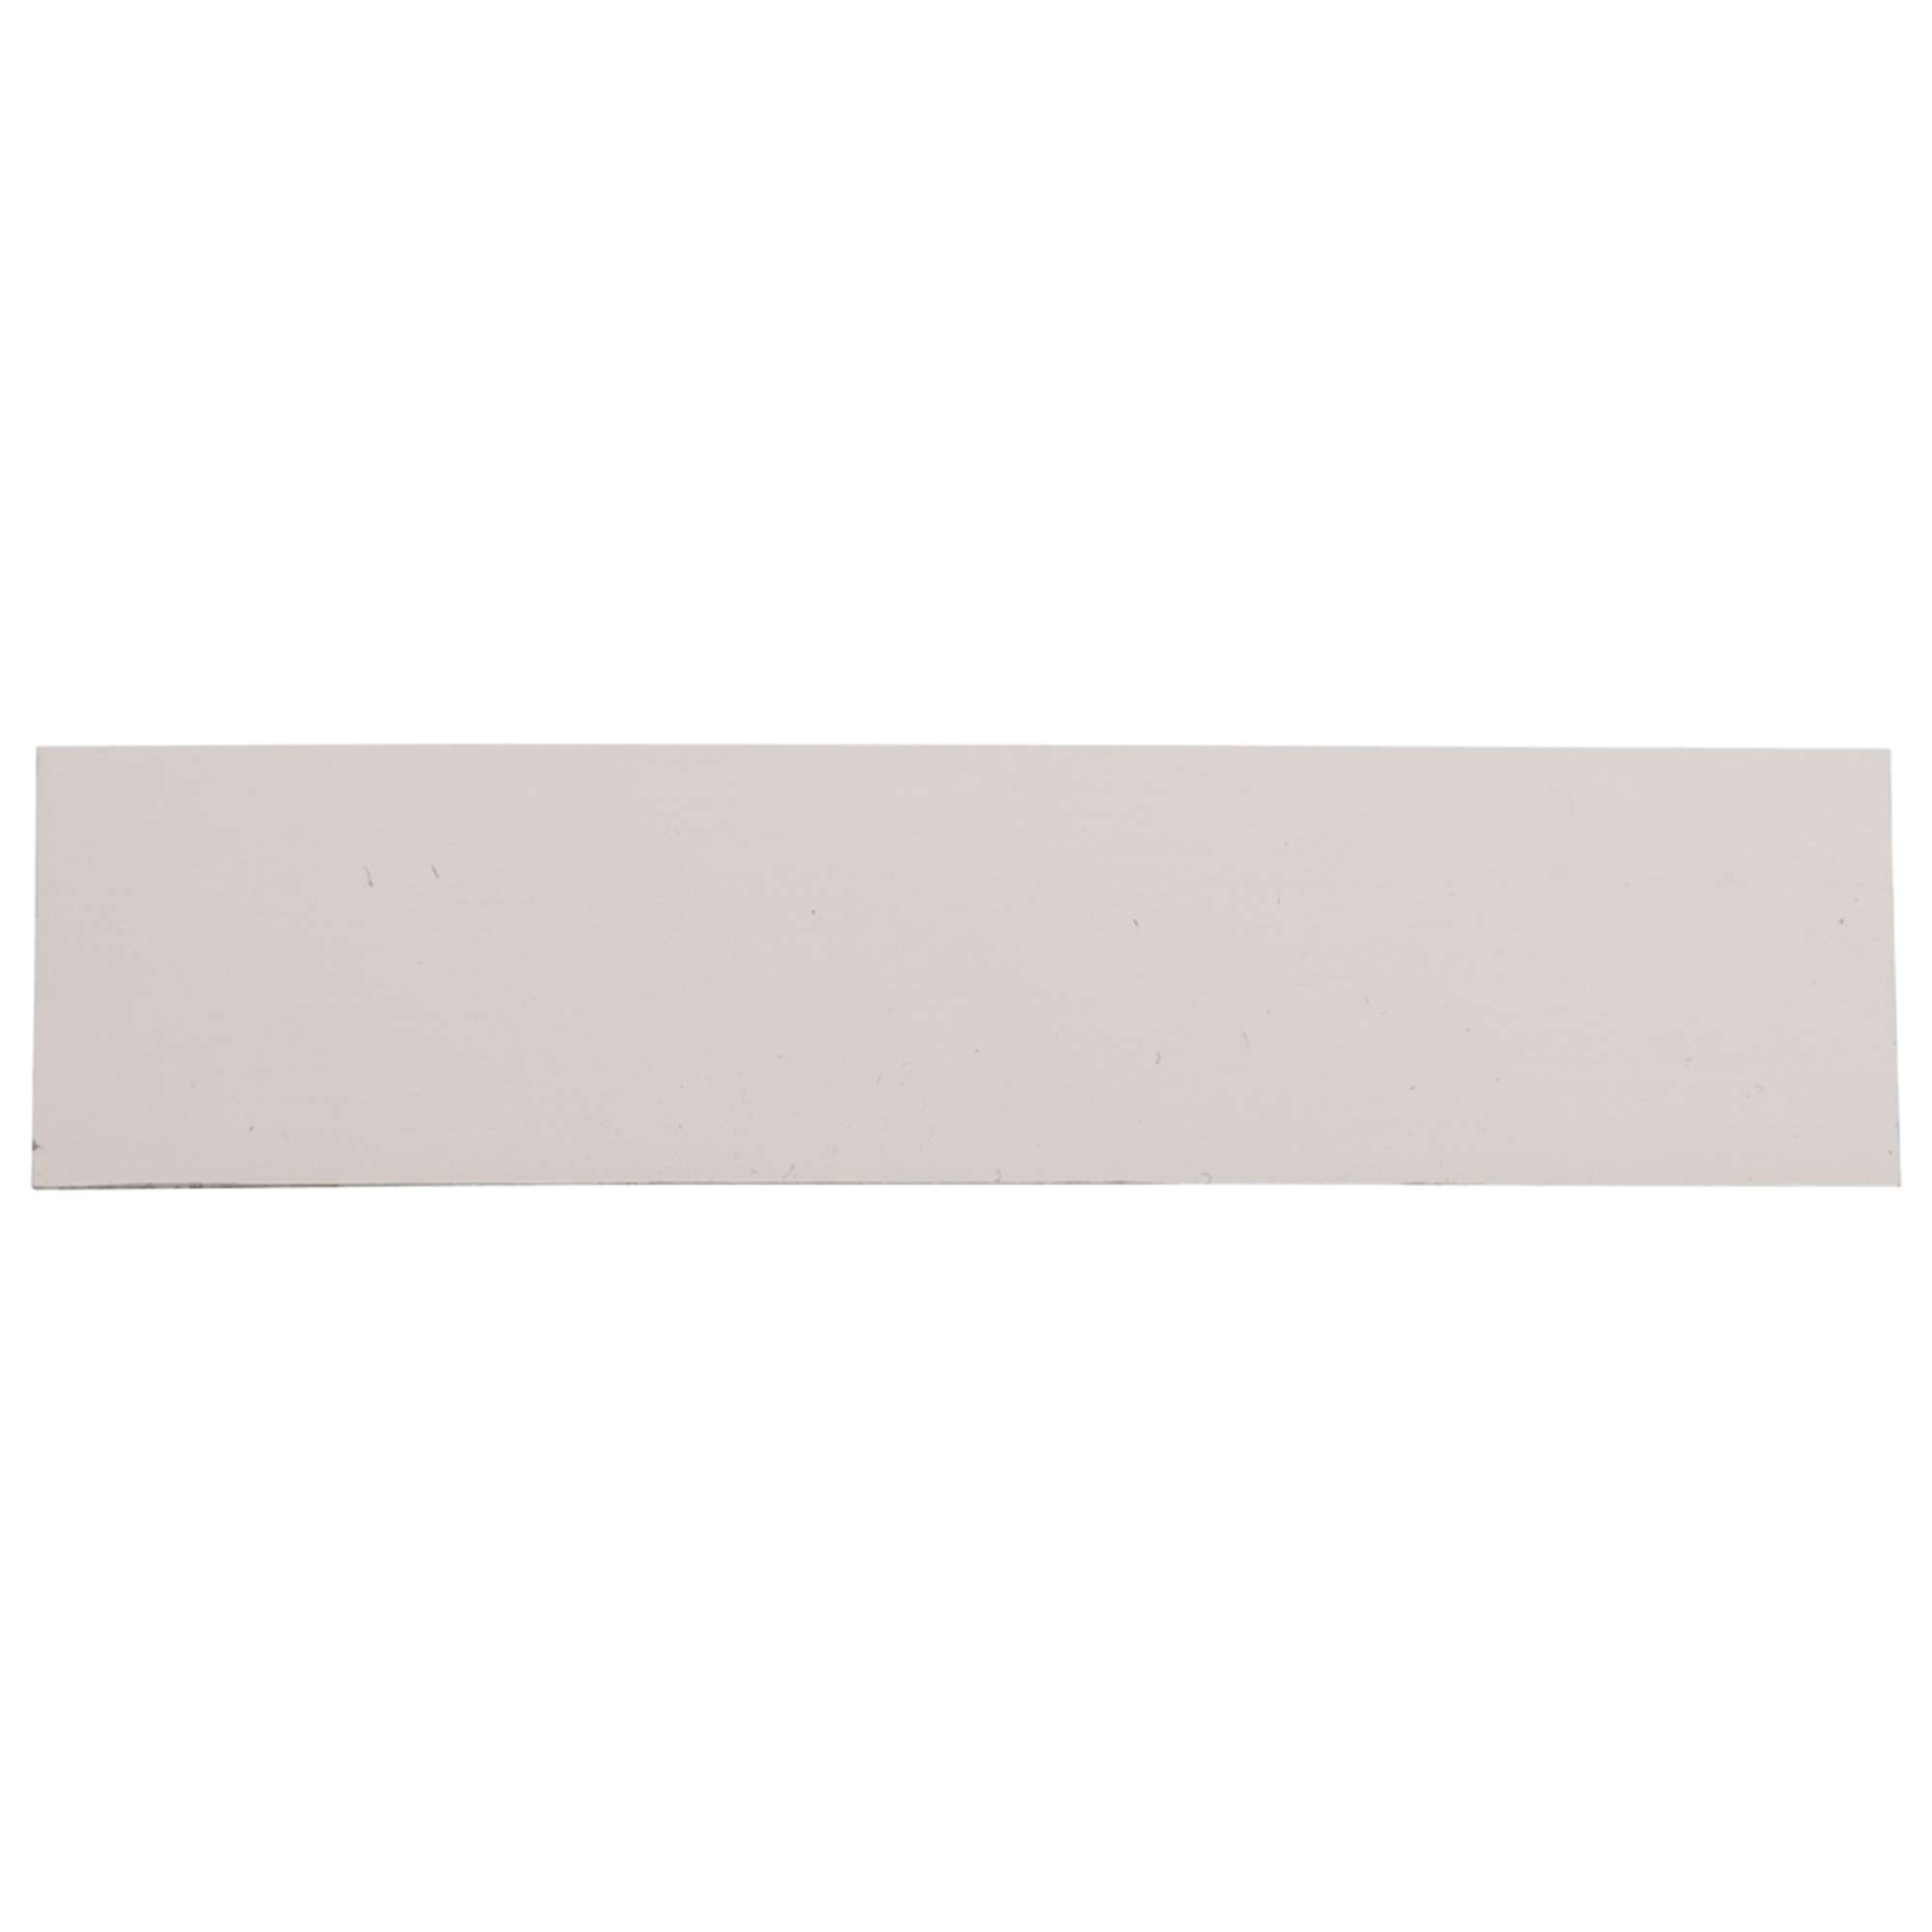 Namensschild-Einlage für Module ohne Gravur, schwarze Schrift / weißer Hintergrund